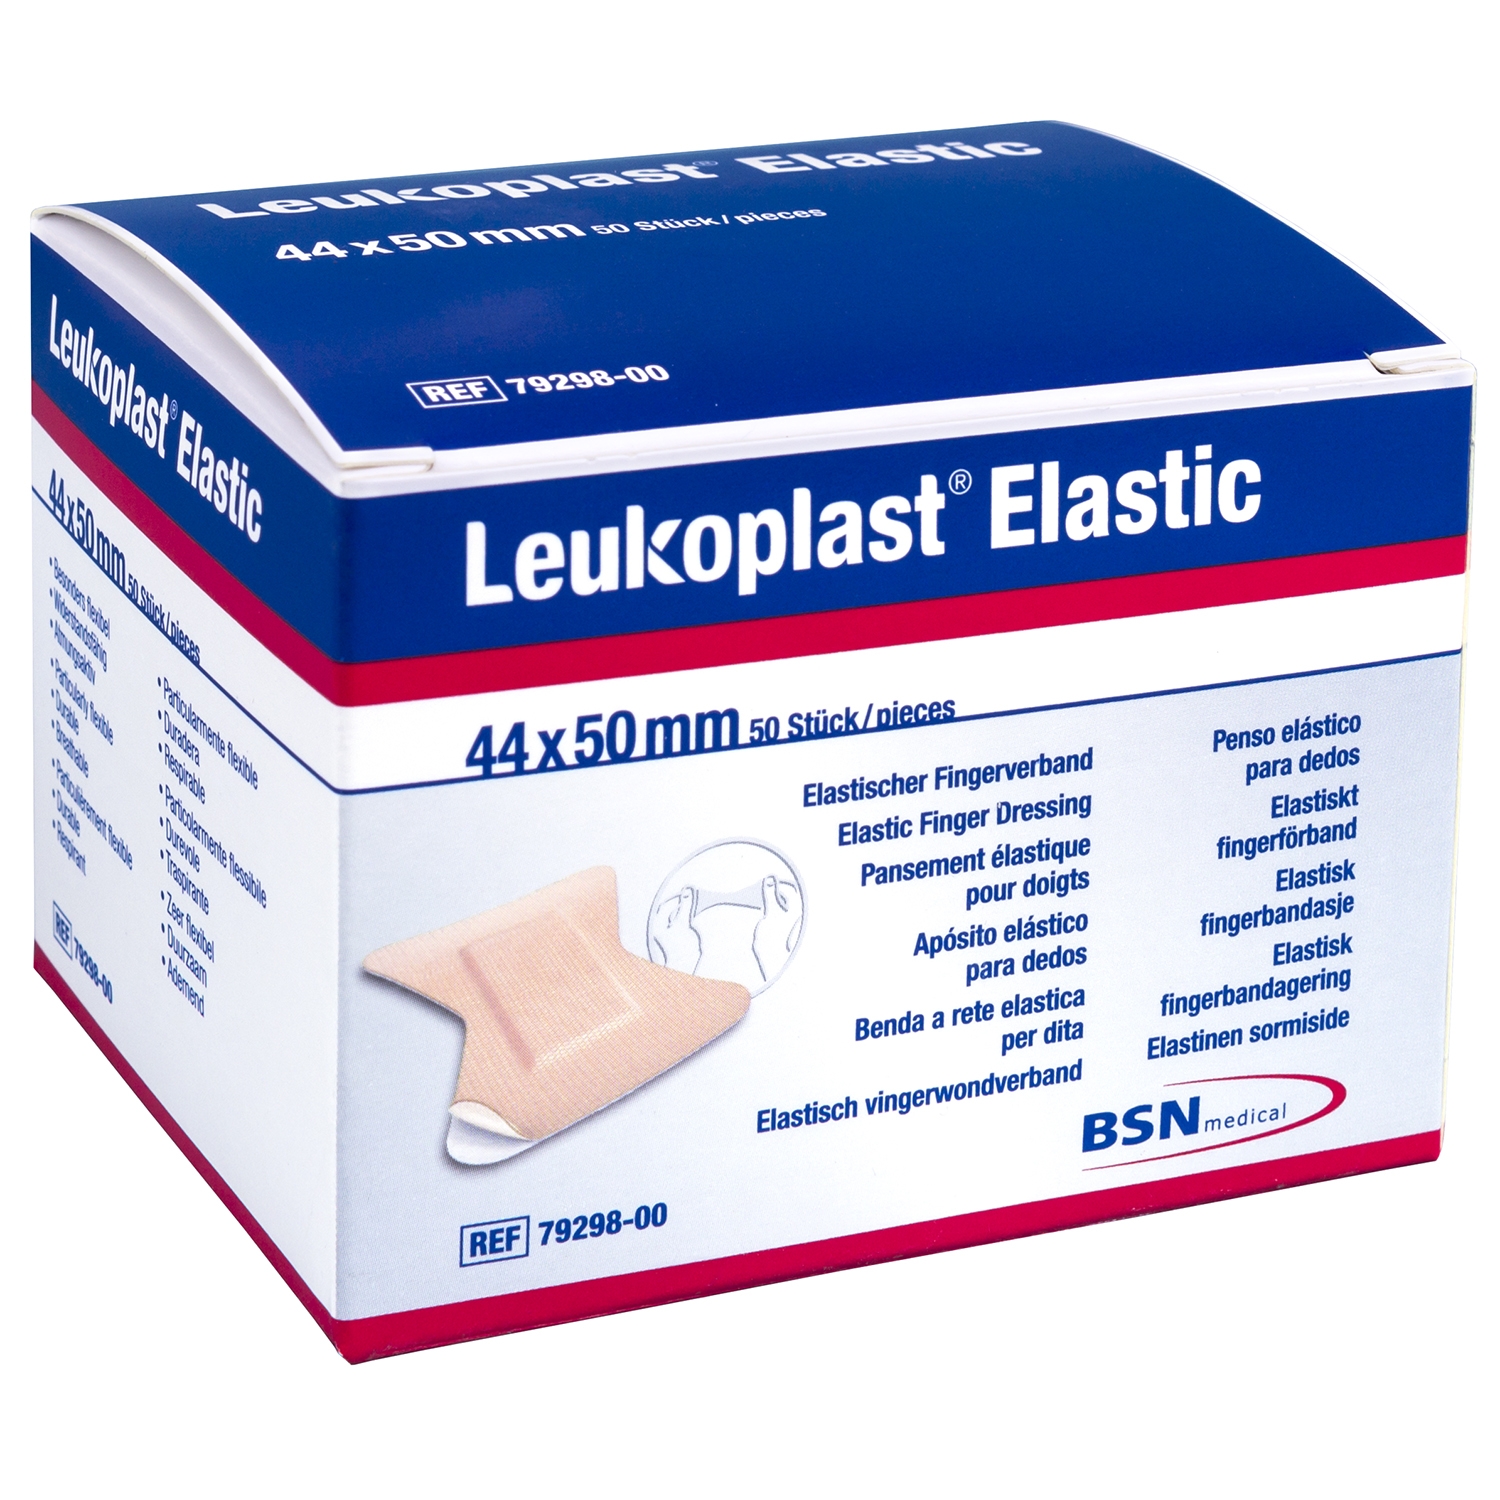 Leukoplast elastic doigt / bout du doigt